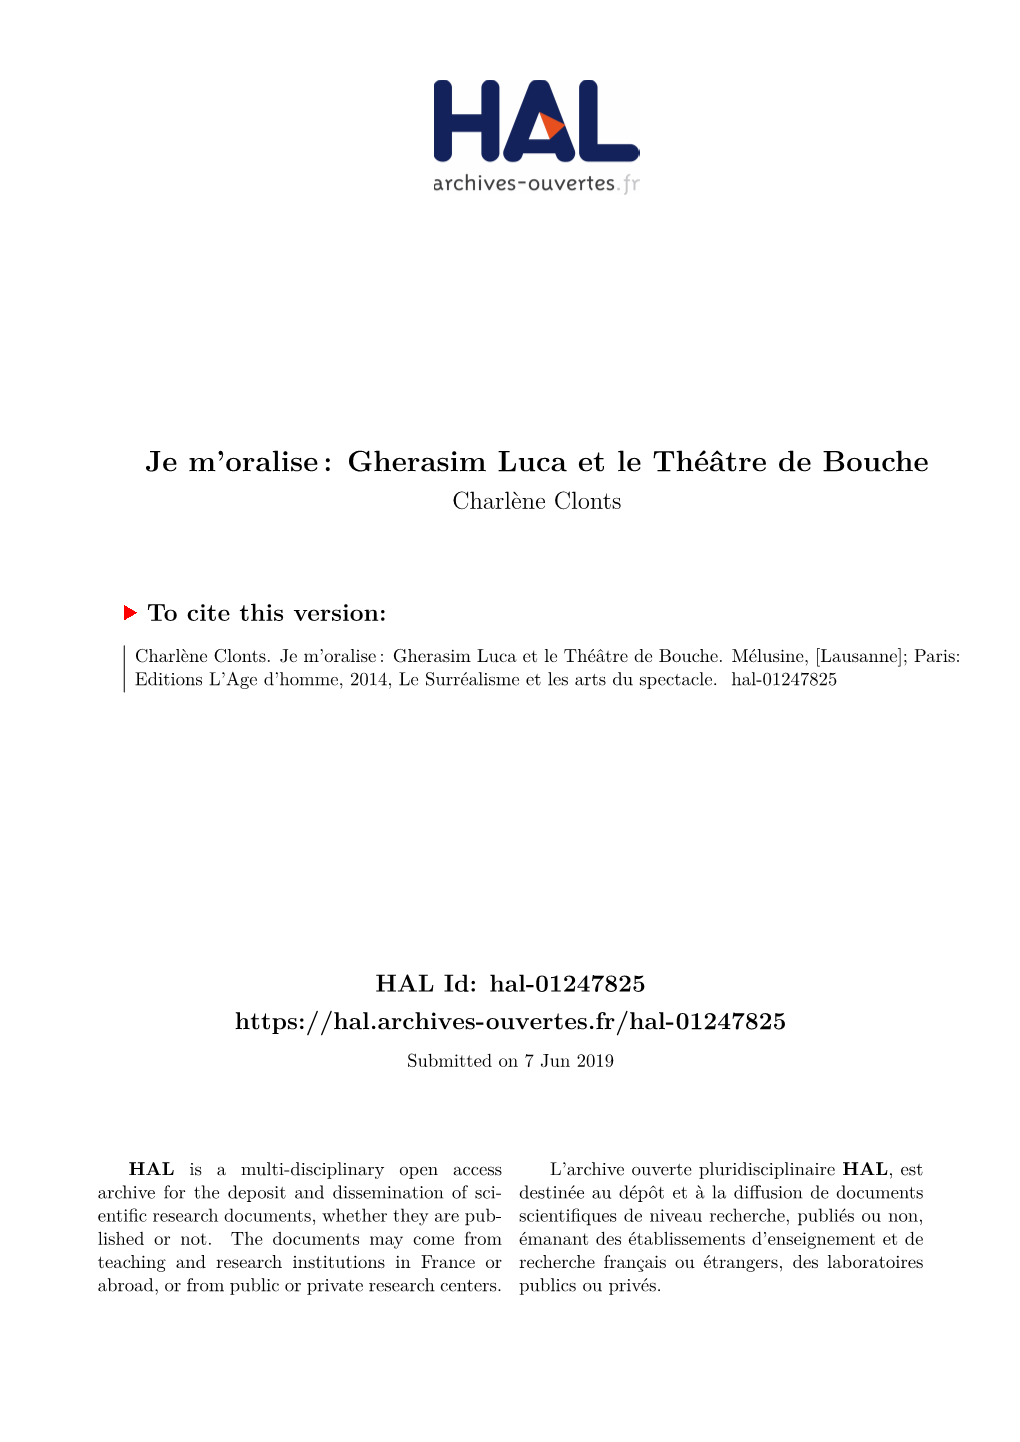 Je M'oralise: Gherasim Luca Et Le Théâtre De Bouche